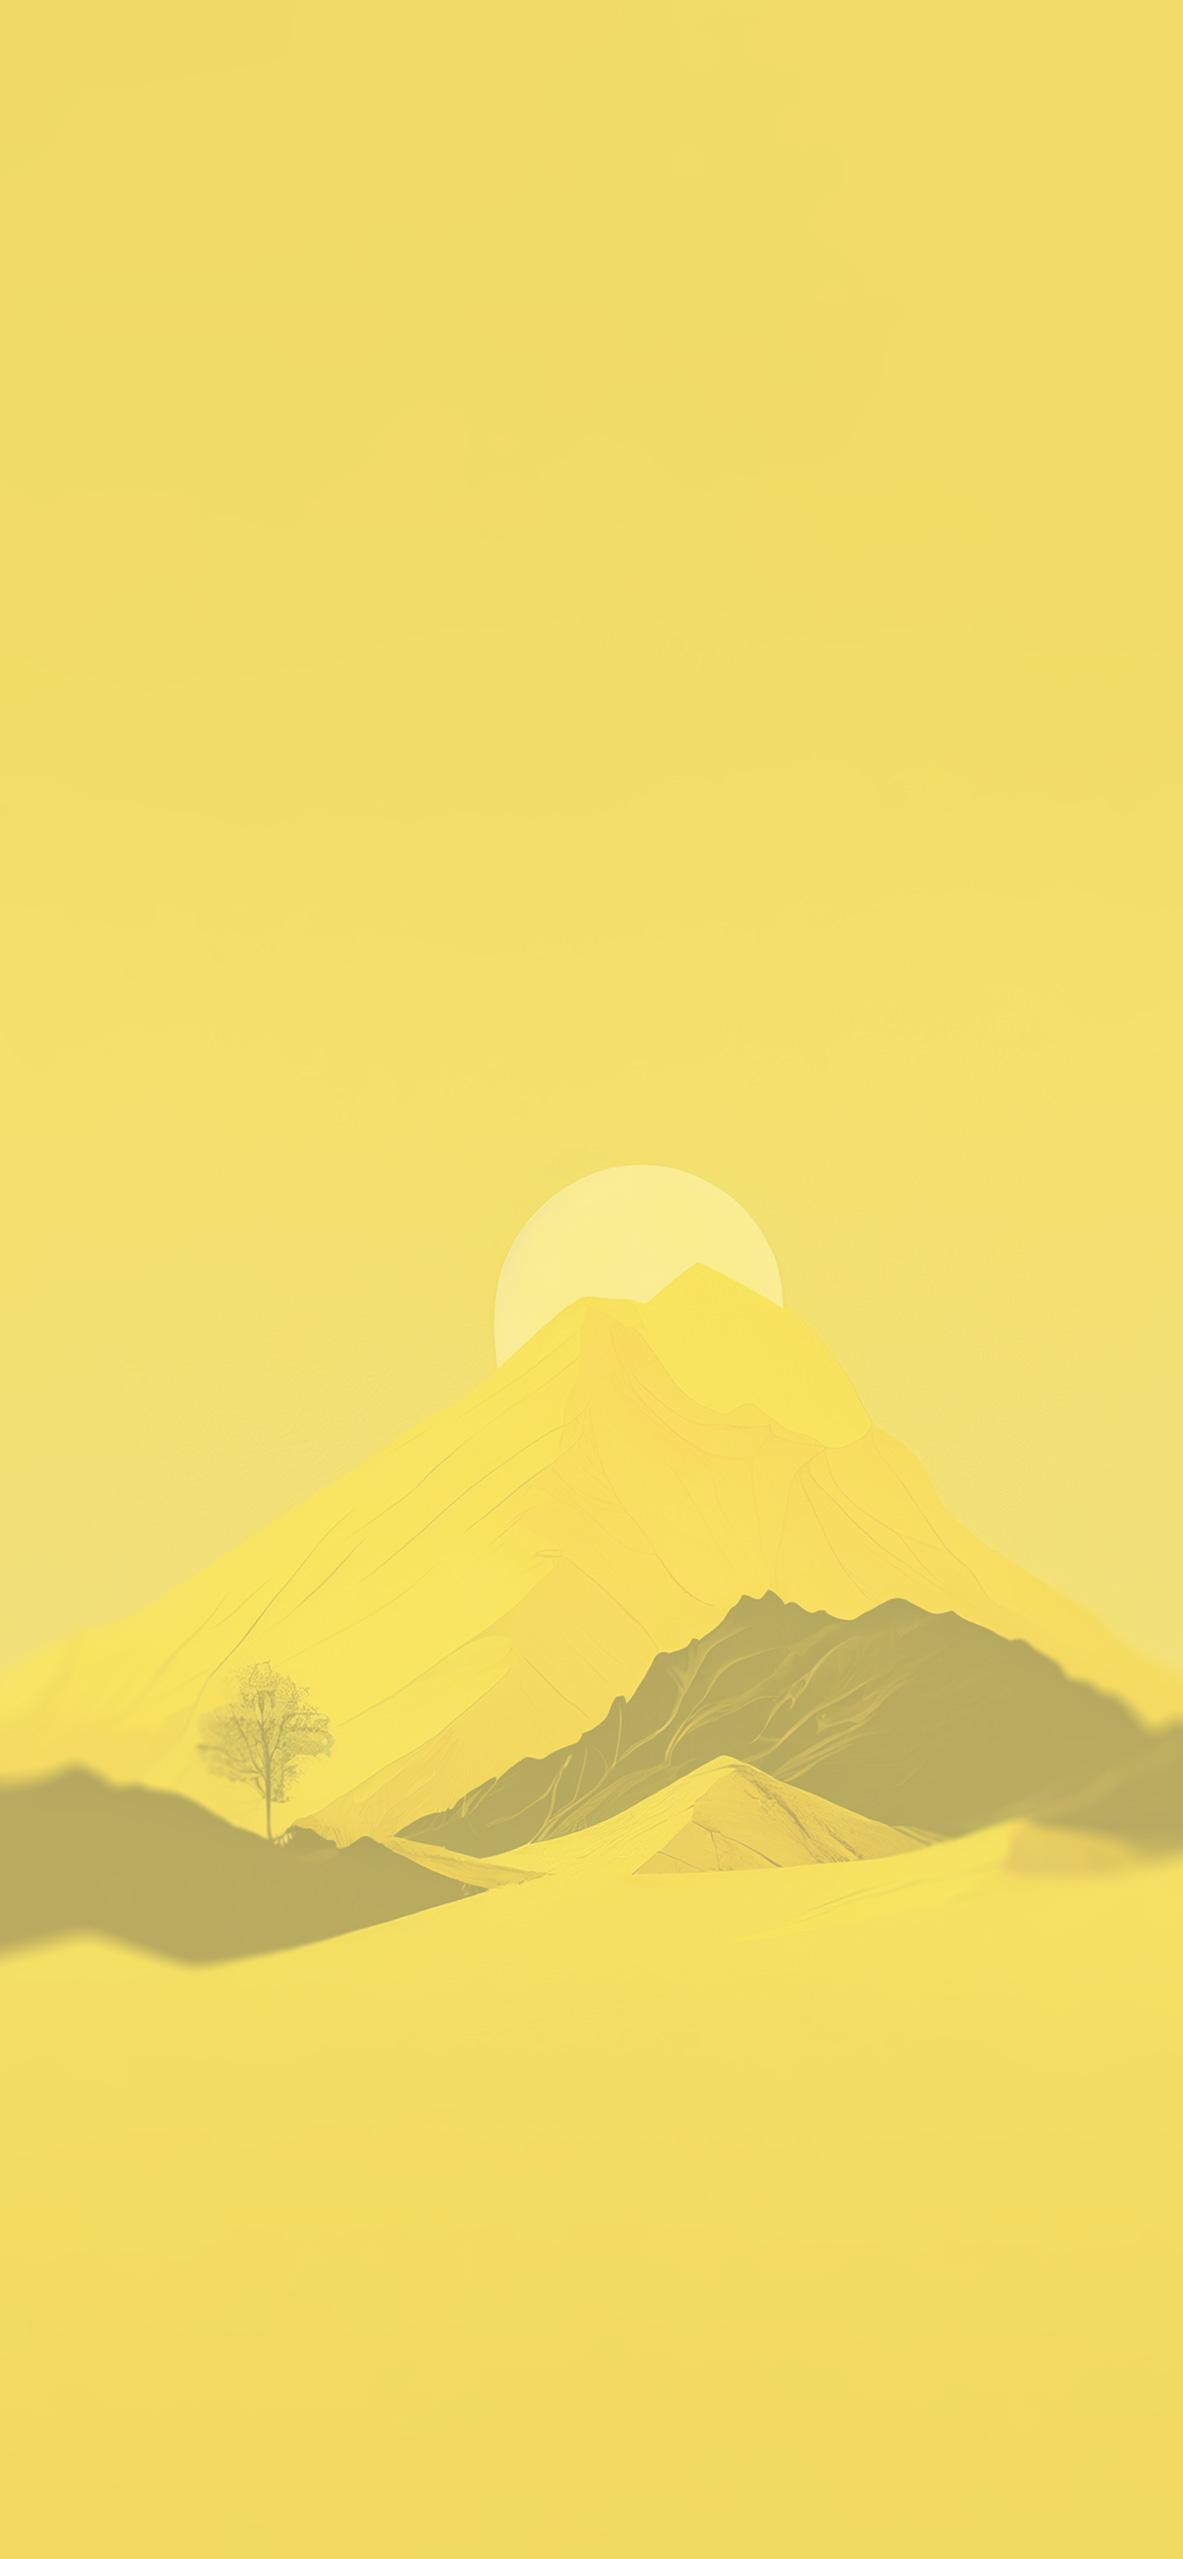 Sun Mountain Yellow Aesthetic Wallpaper 4k